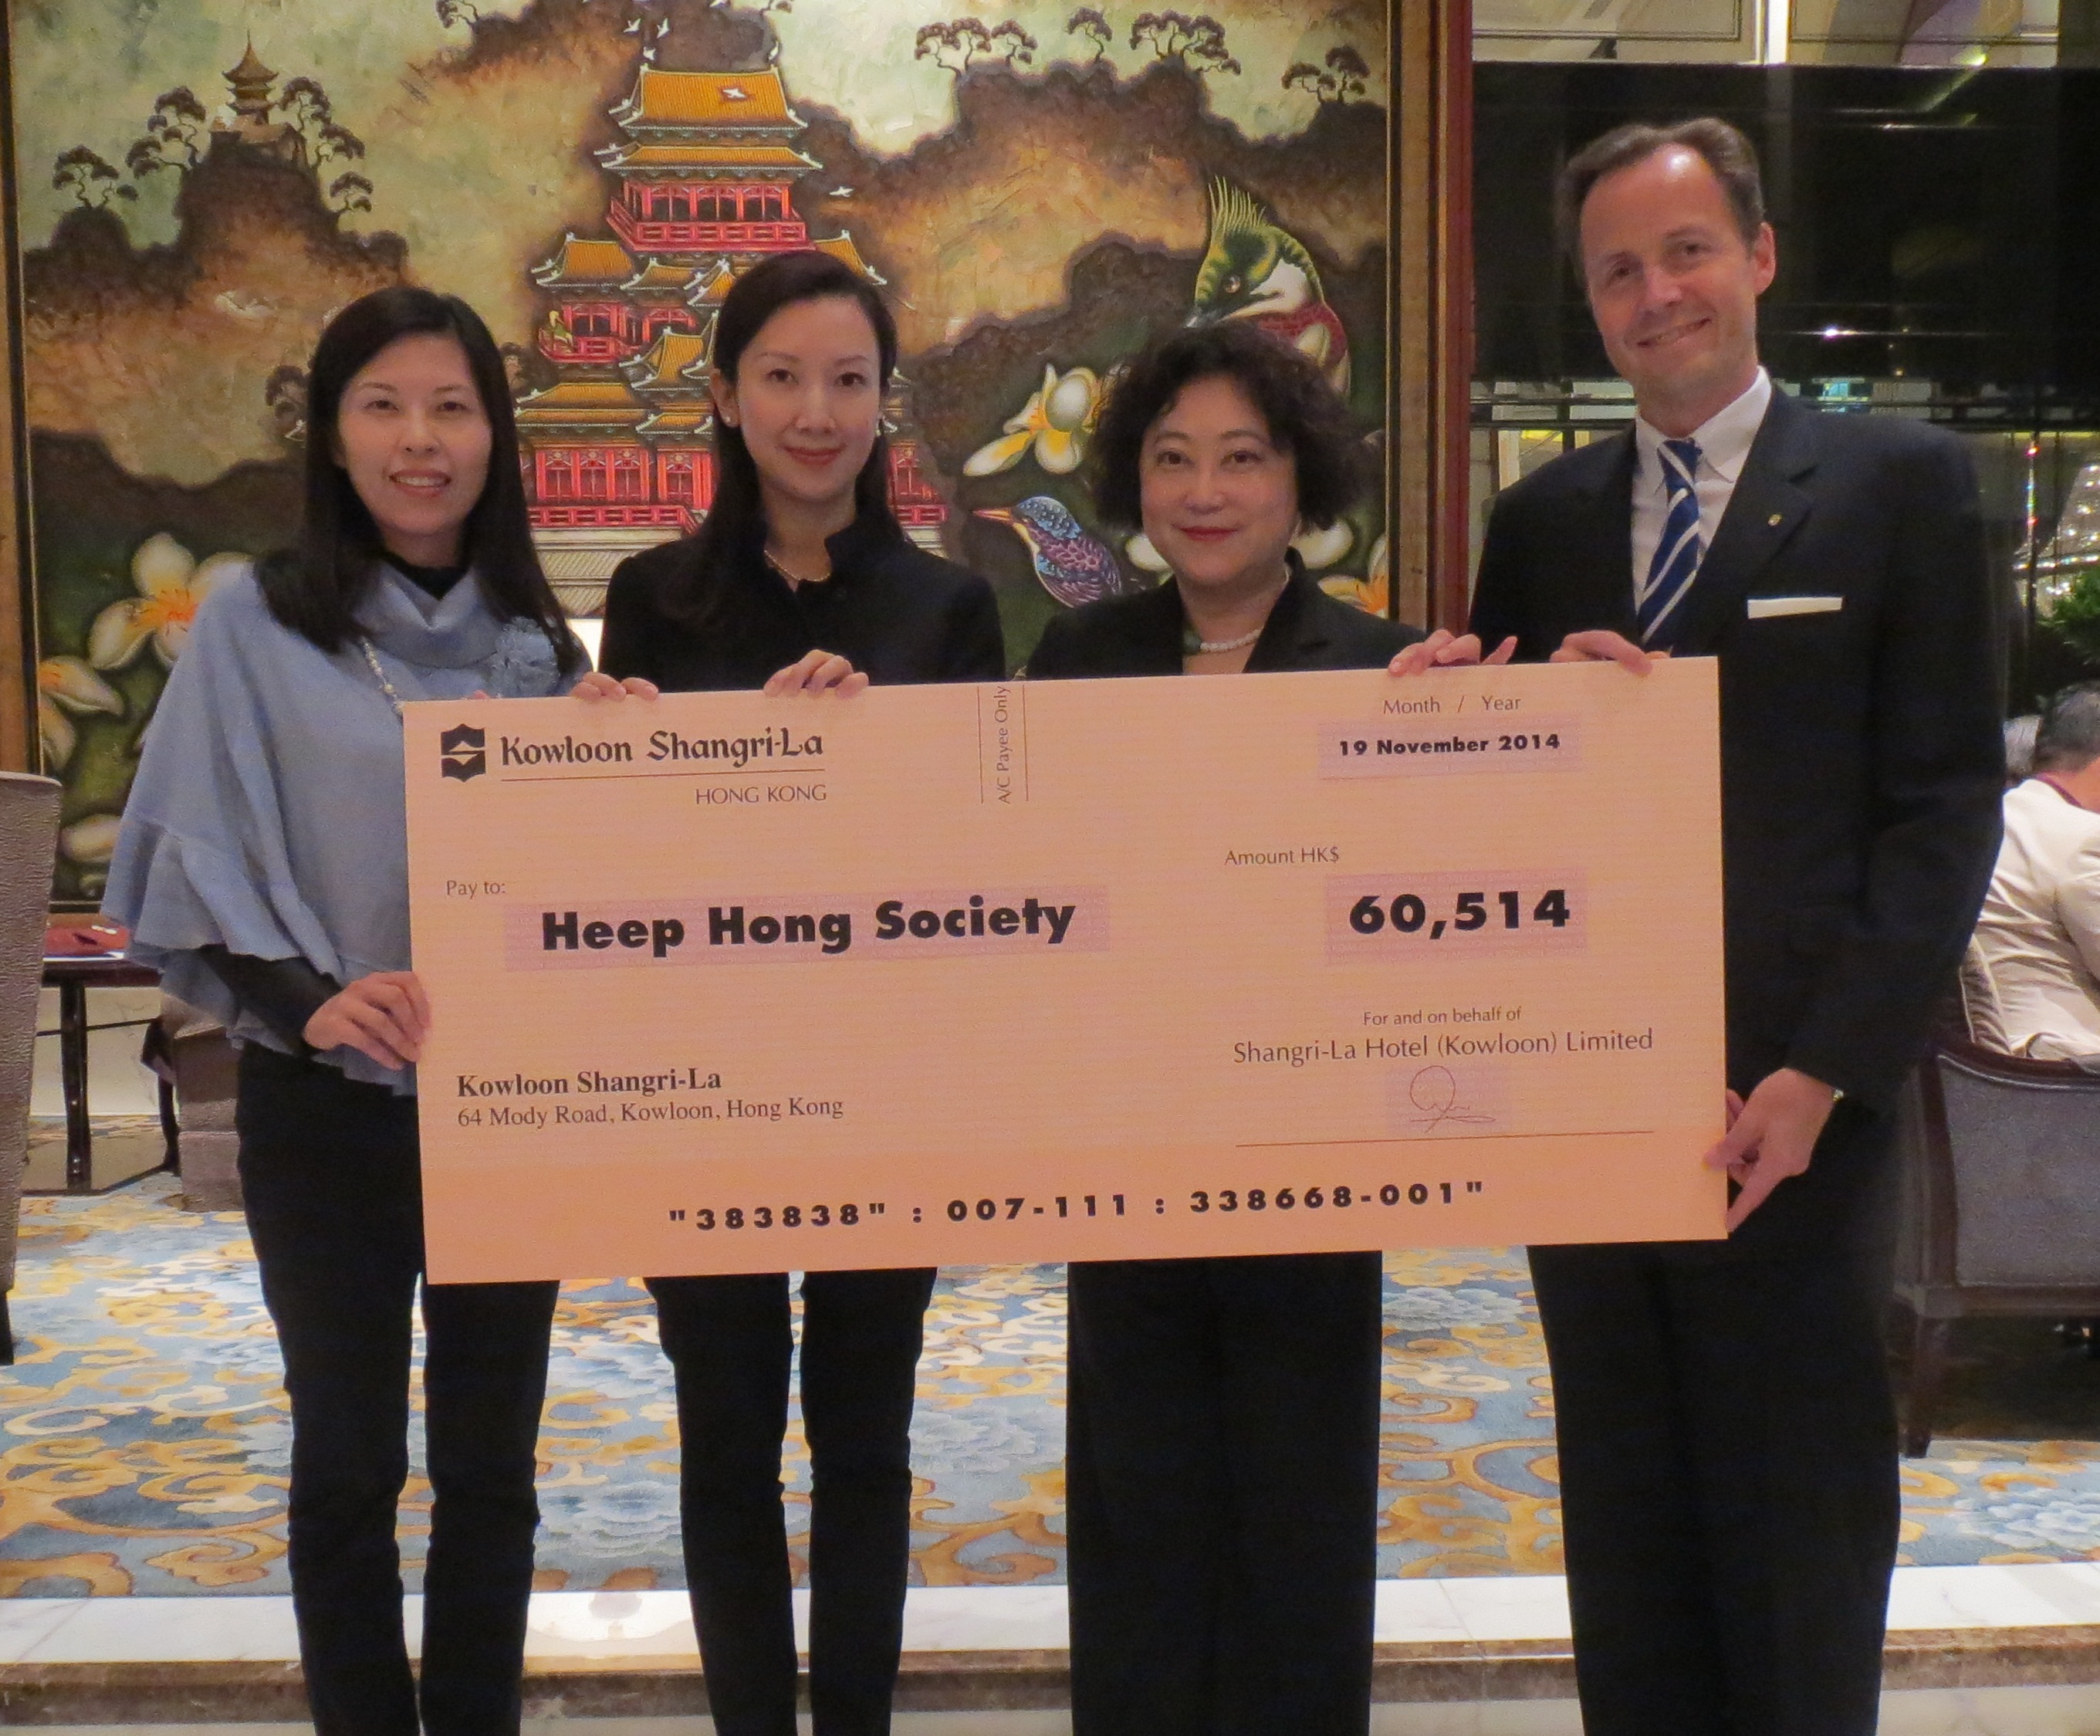 Kowloon Shangri-La, Hong Kong, presented the cheque of donation to Heep Hong Society 